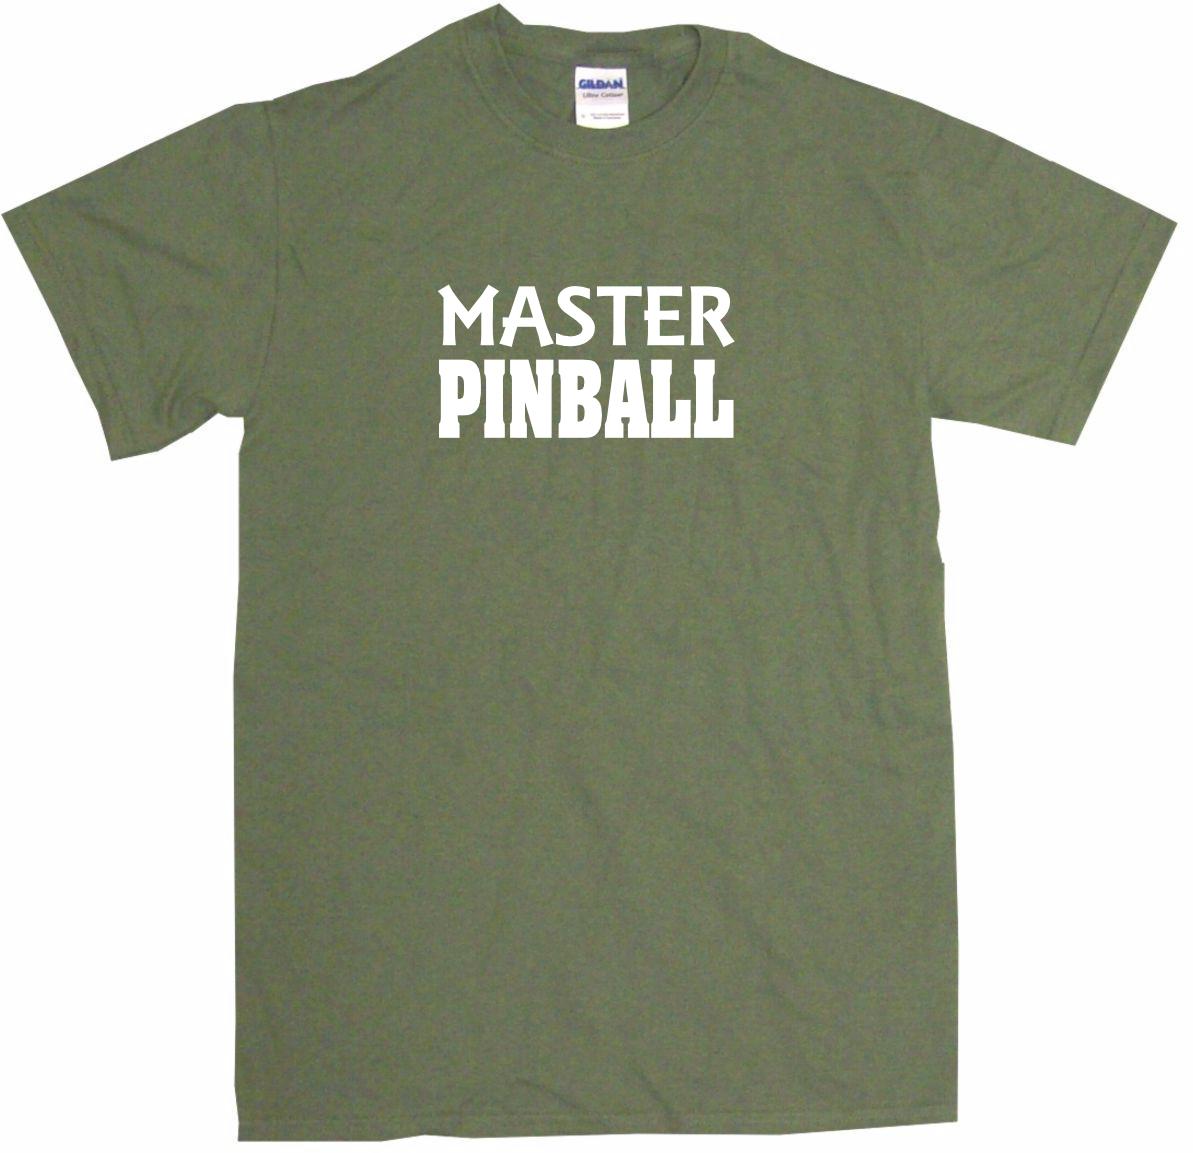 Pinball Master Mens Tee Shirt Pick Size Color Small-6XL 